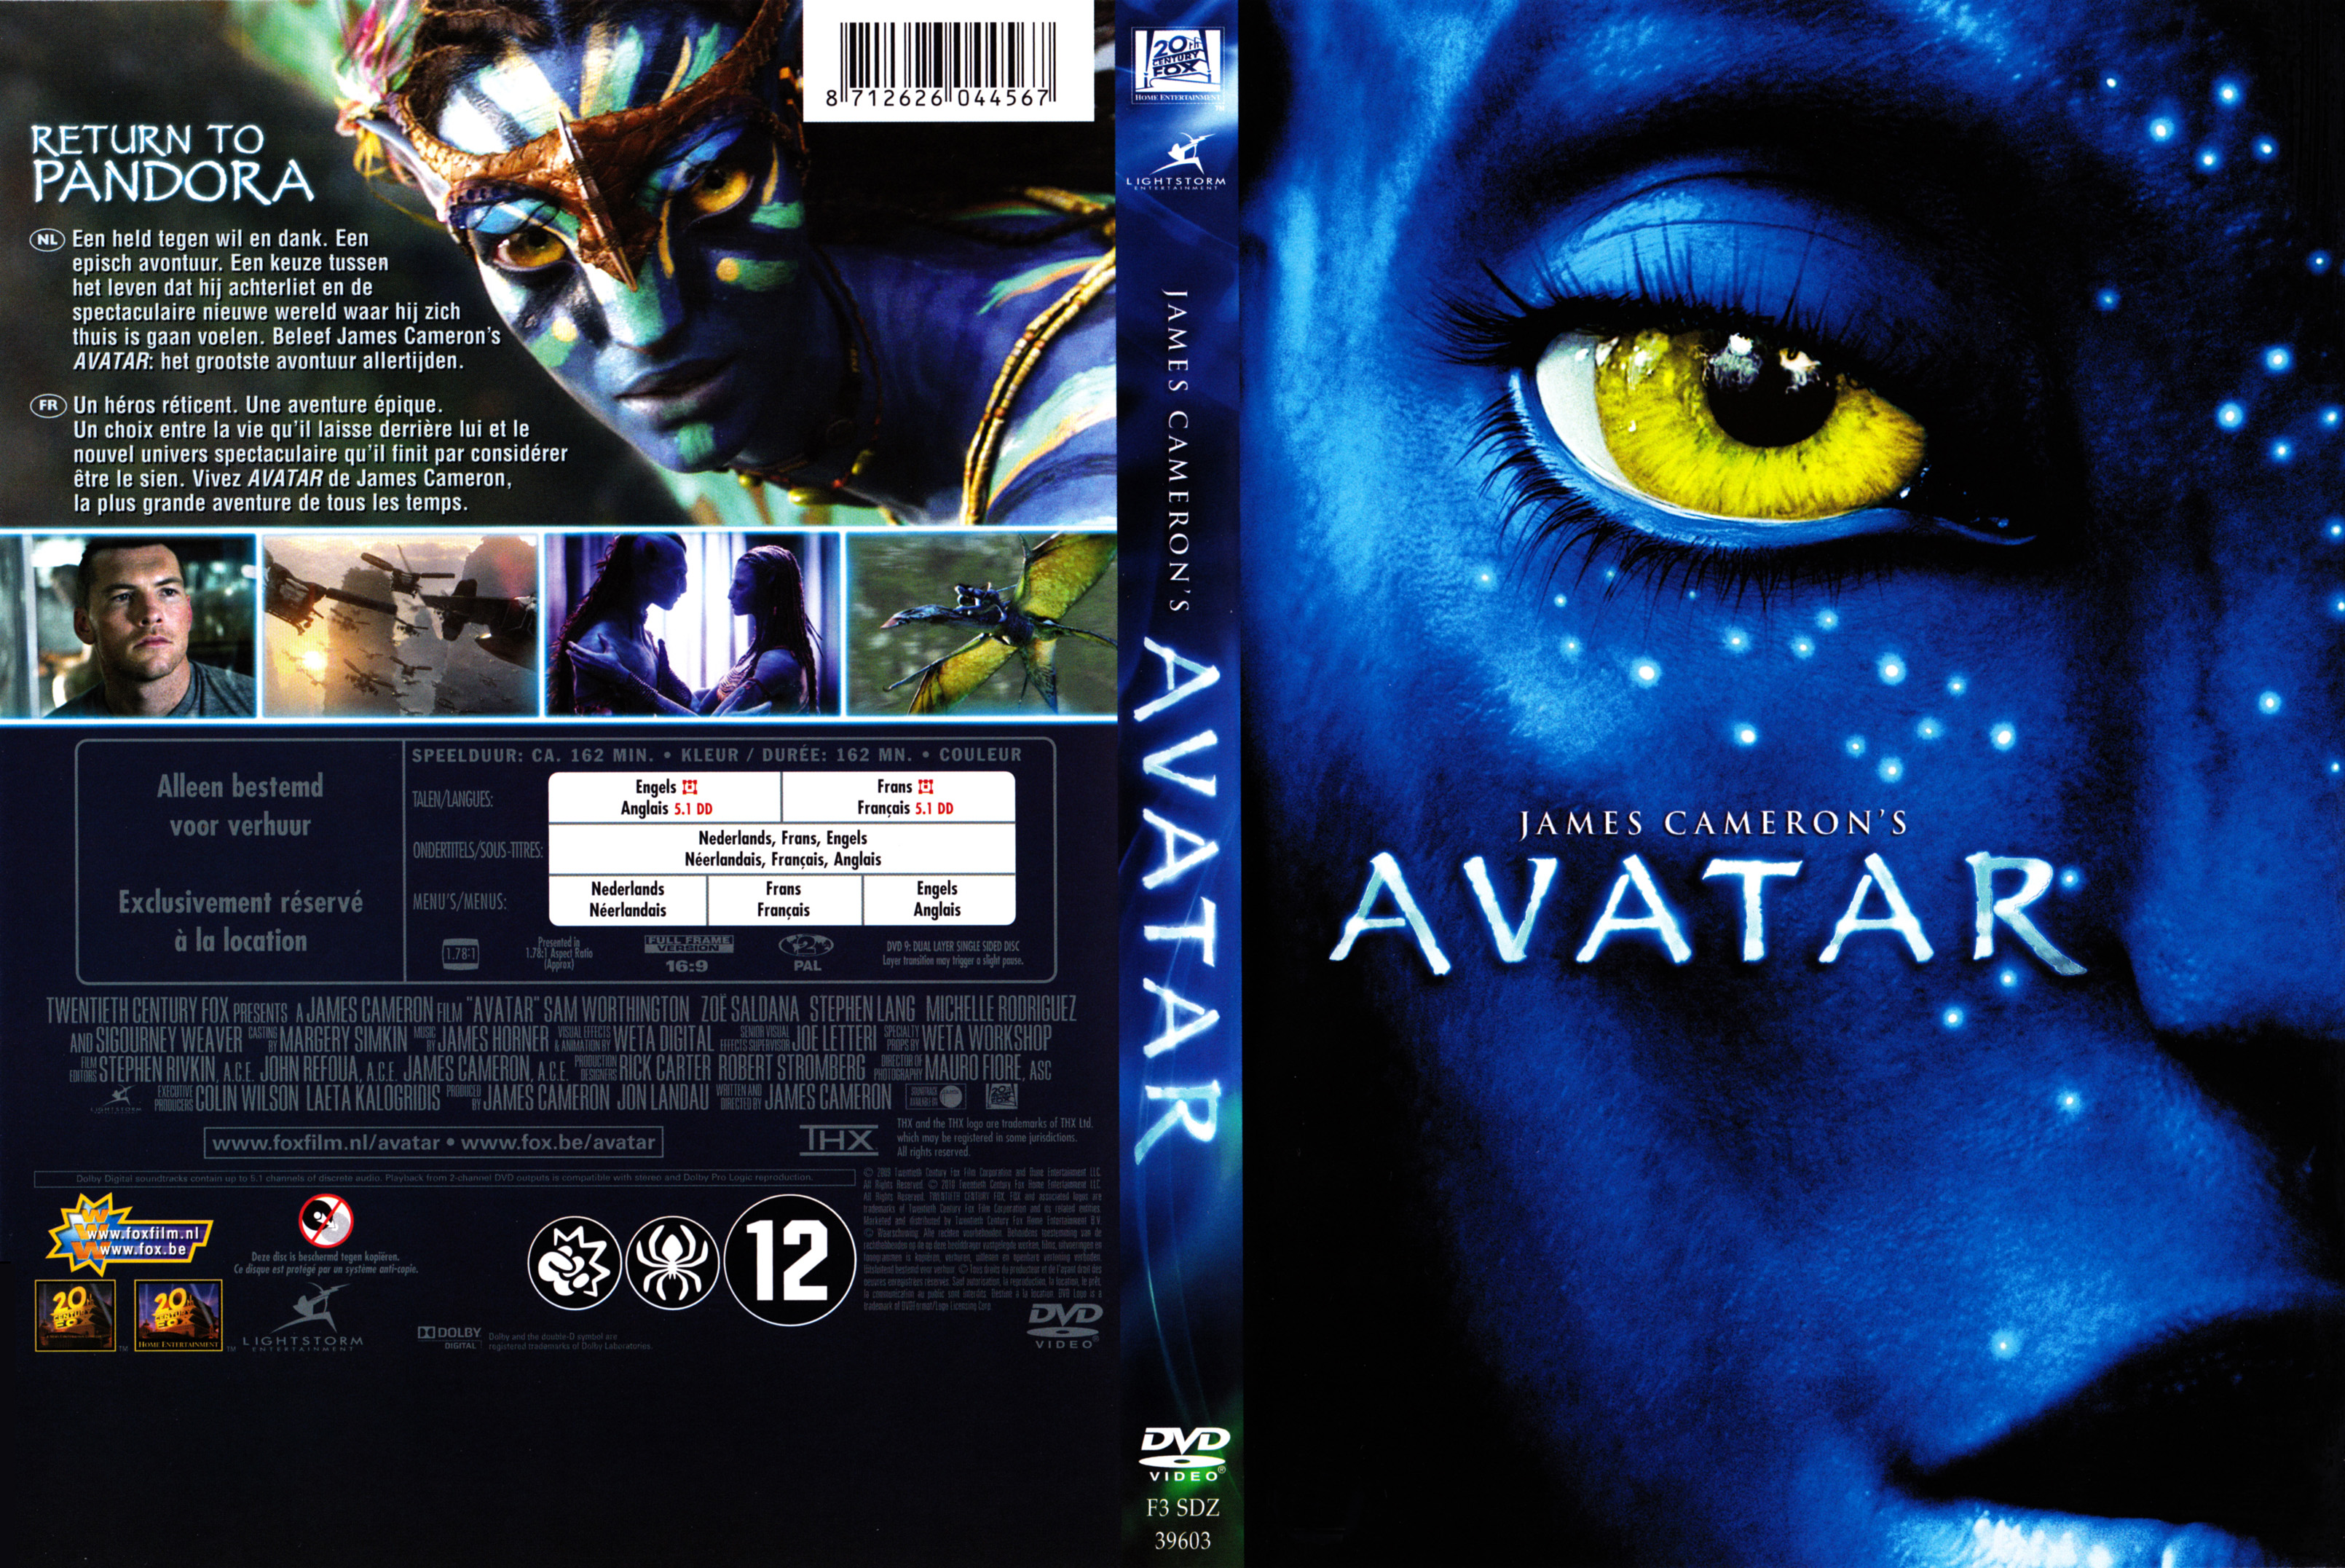 Jaquette DVD de Avatar - Cinéma Passion